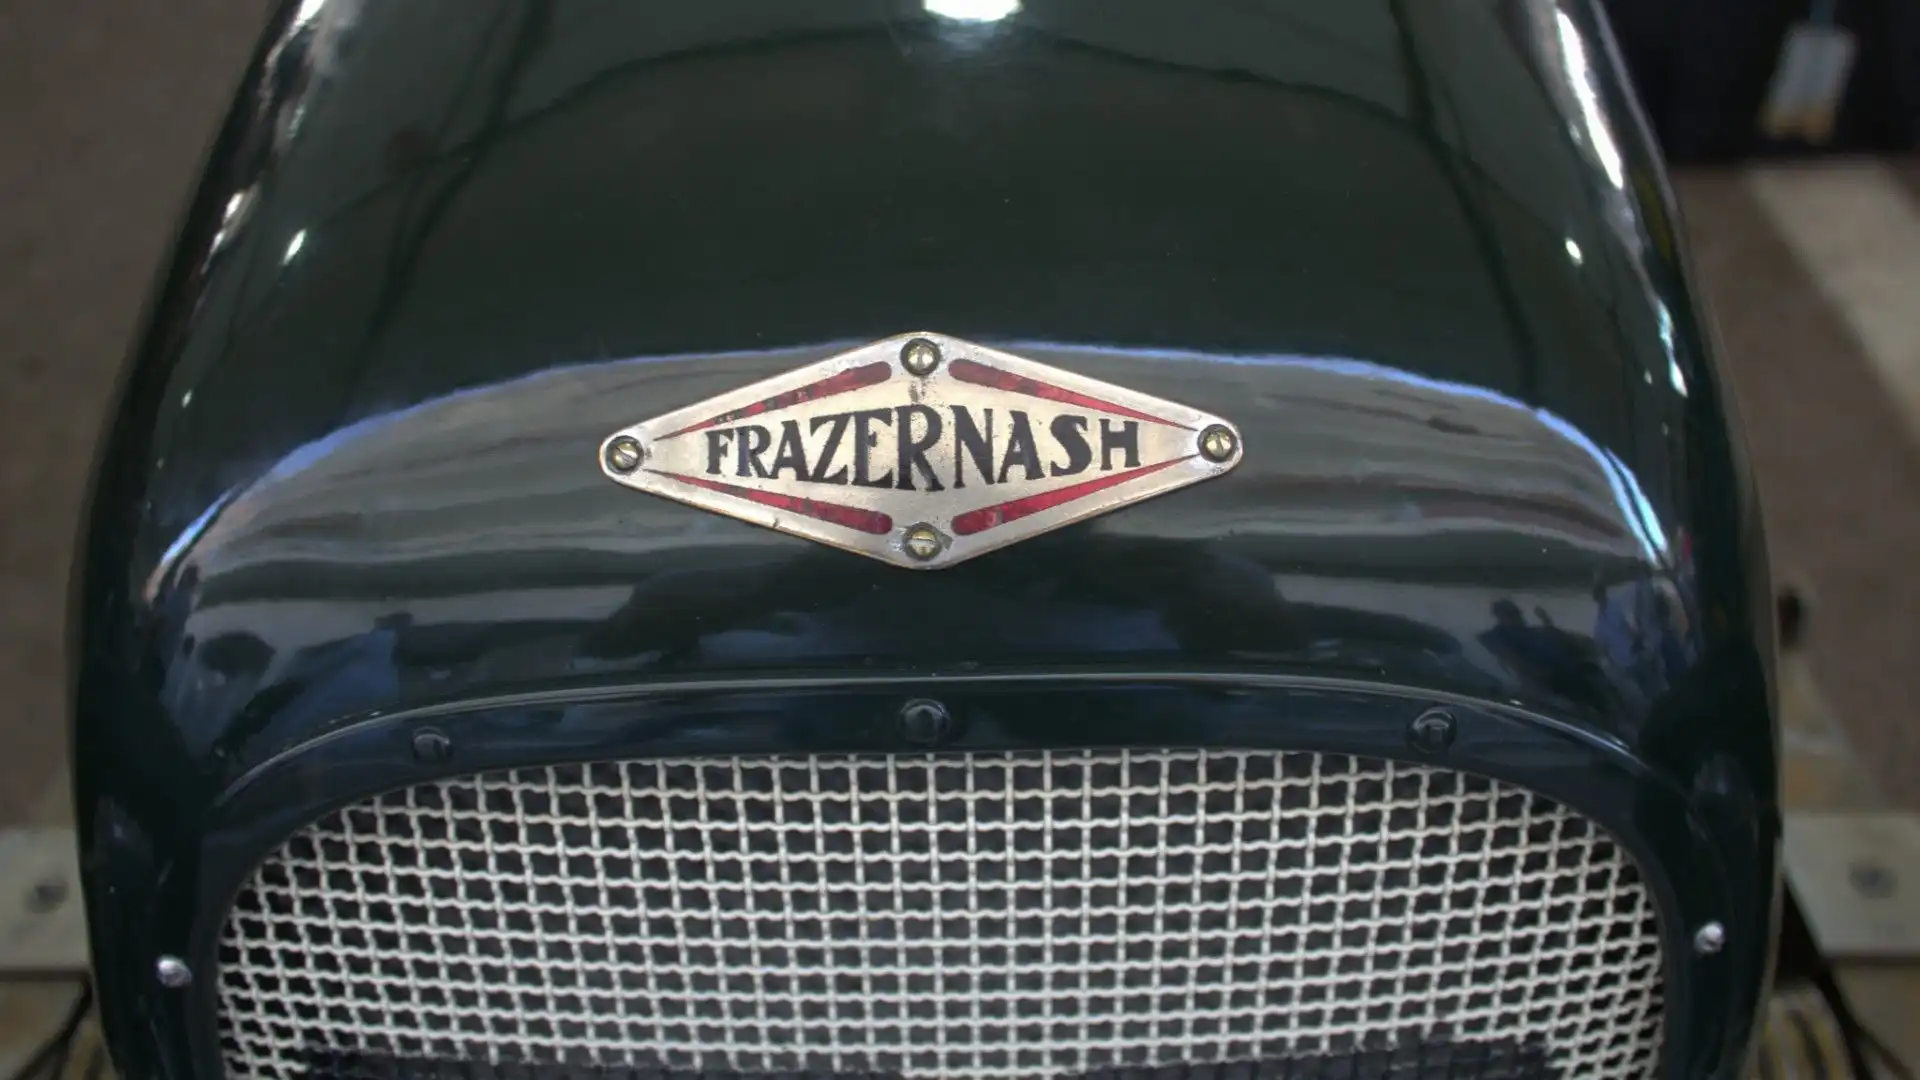 La Frazer Nash del 1935 rimane un simbolo di prestigio e raffinatezza nel mondo delle corse automobilistiche